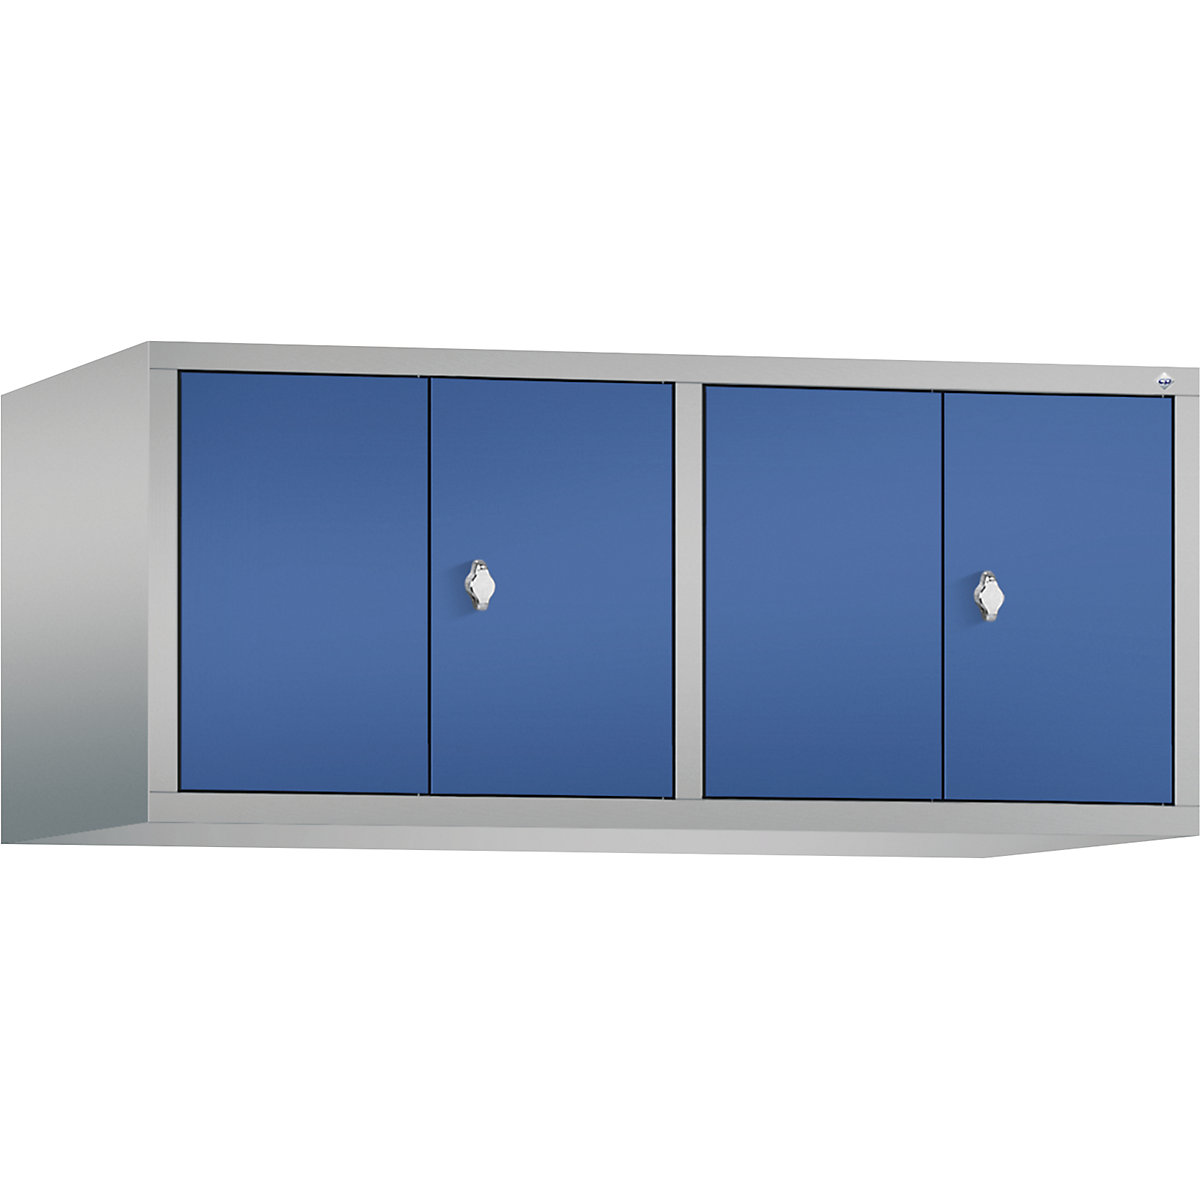 C+P – Dogradni ormar CLASSIC, vrata koja se zatvaraju jedna prema drugima, 4 odjela, širina odjela 300 mm, u aluminij bijeloj / encijan plavoj boji